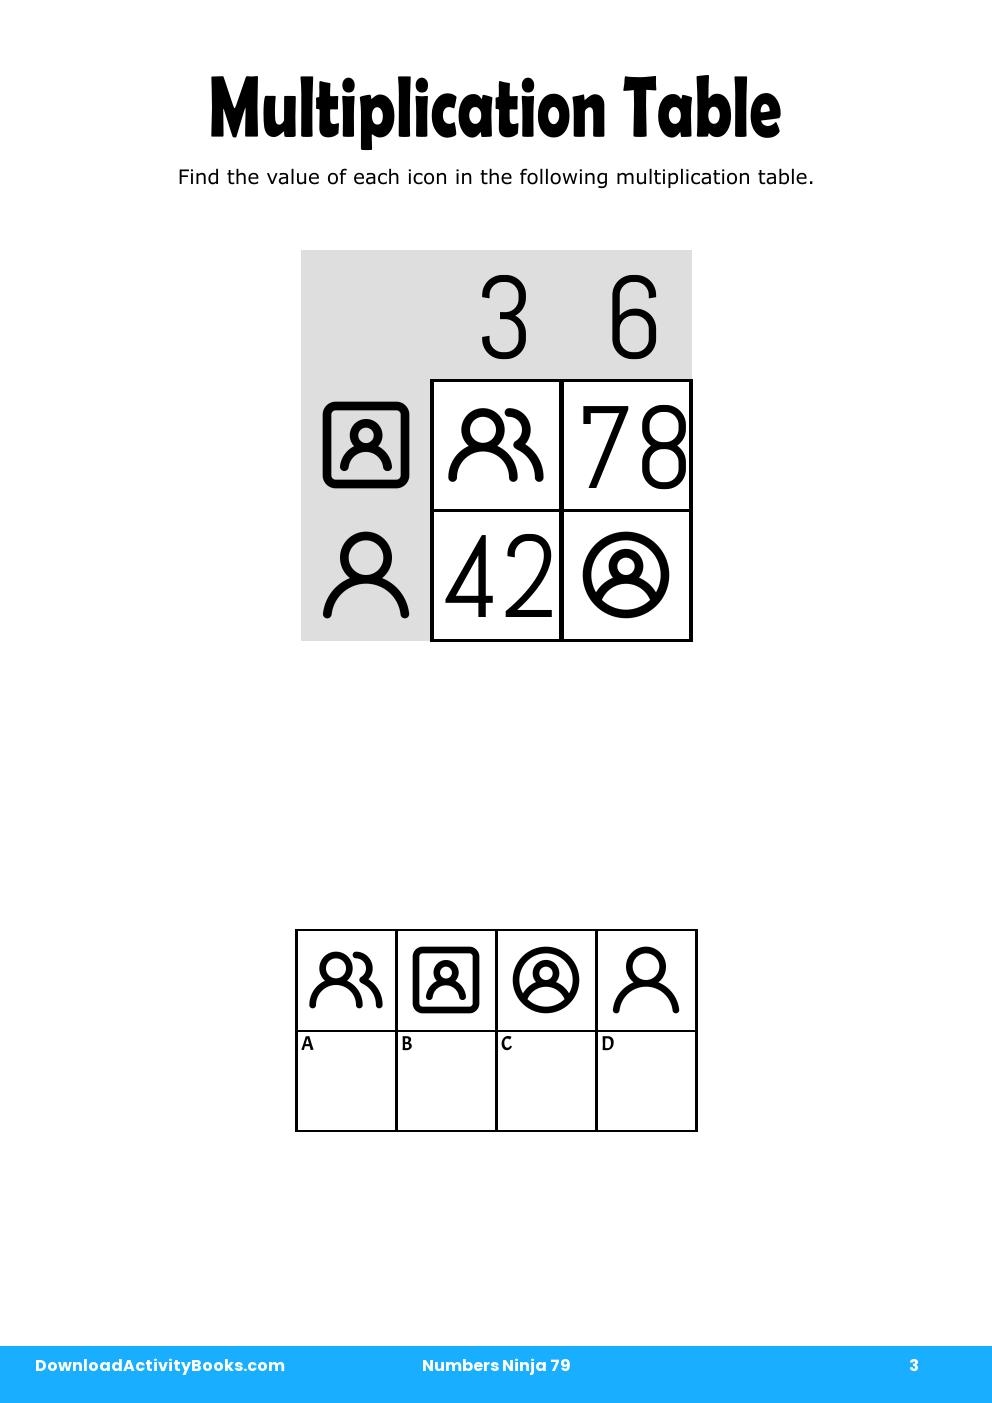 Multiplication Table in Numbers Ninja 79